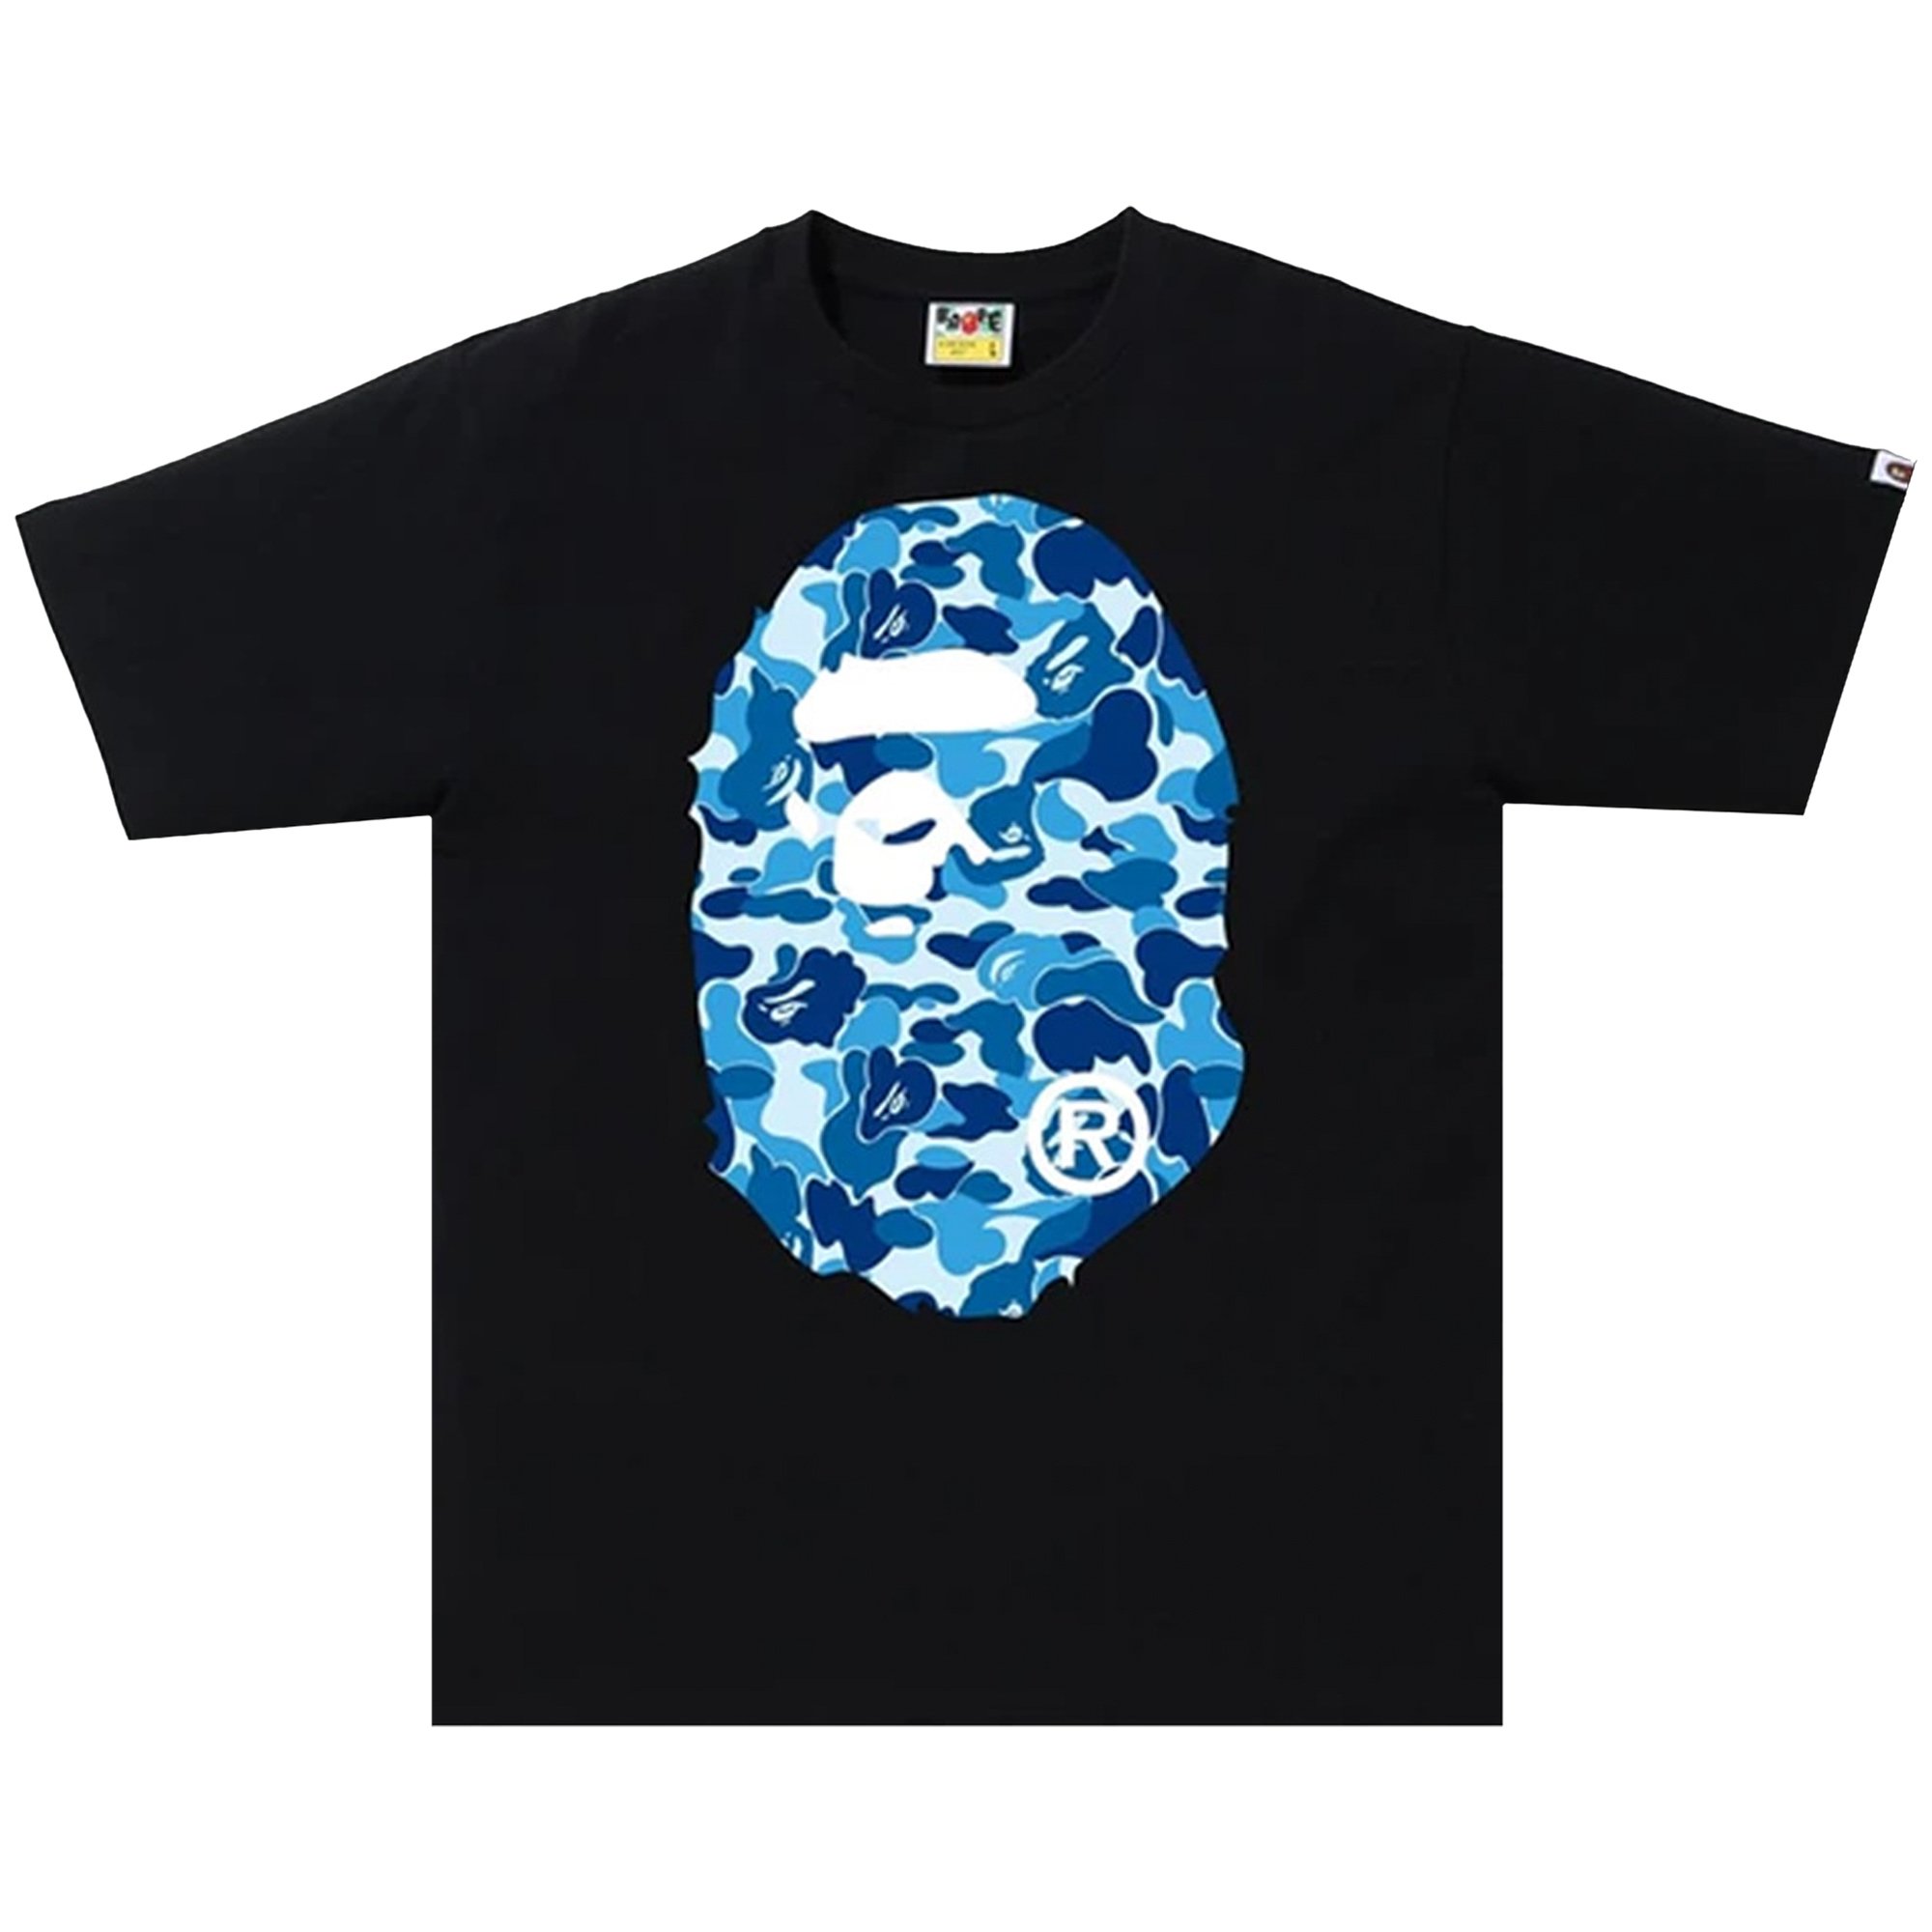 BAPE ABC Камуфляжная футболка с головой большой обезьяны, цвет черный/синий